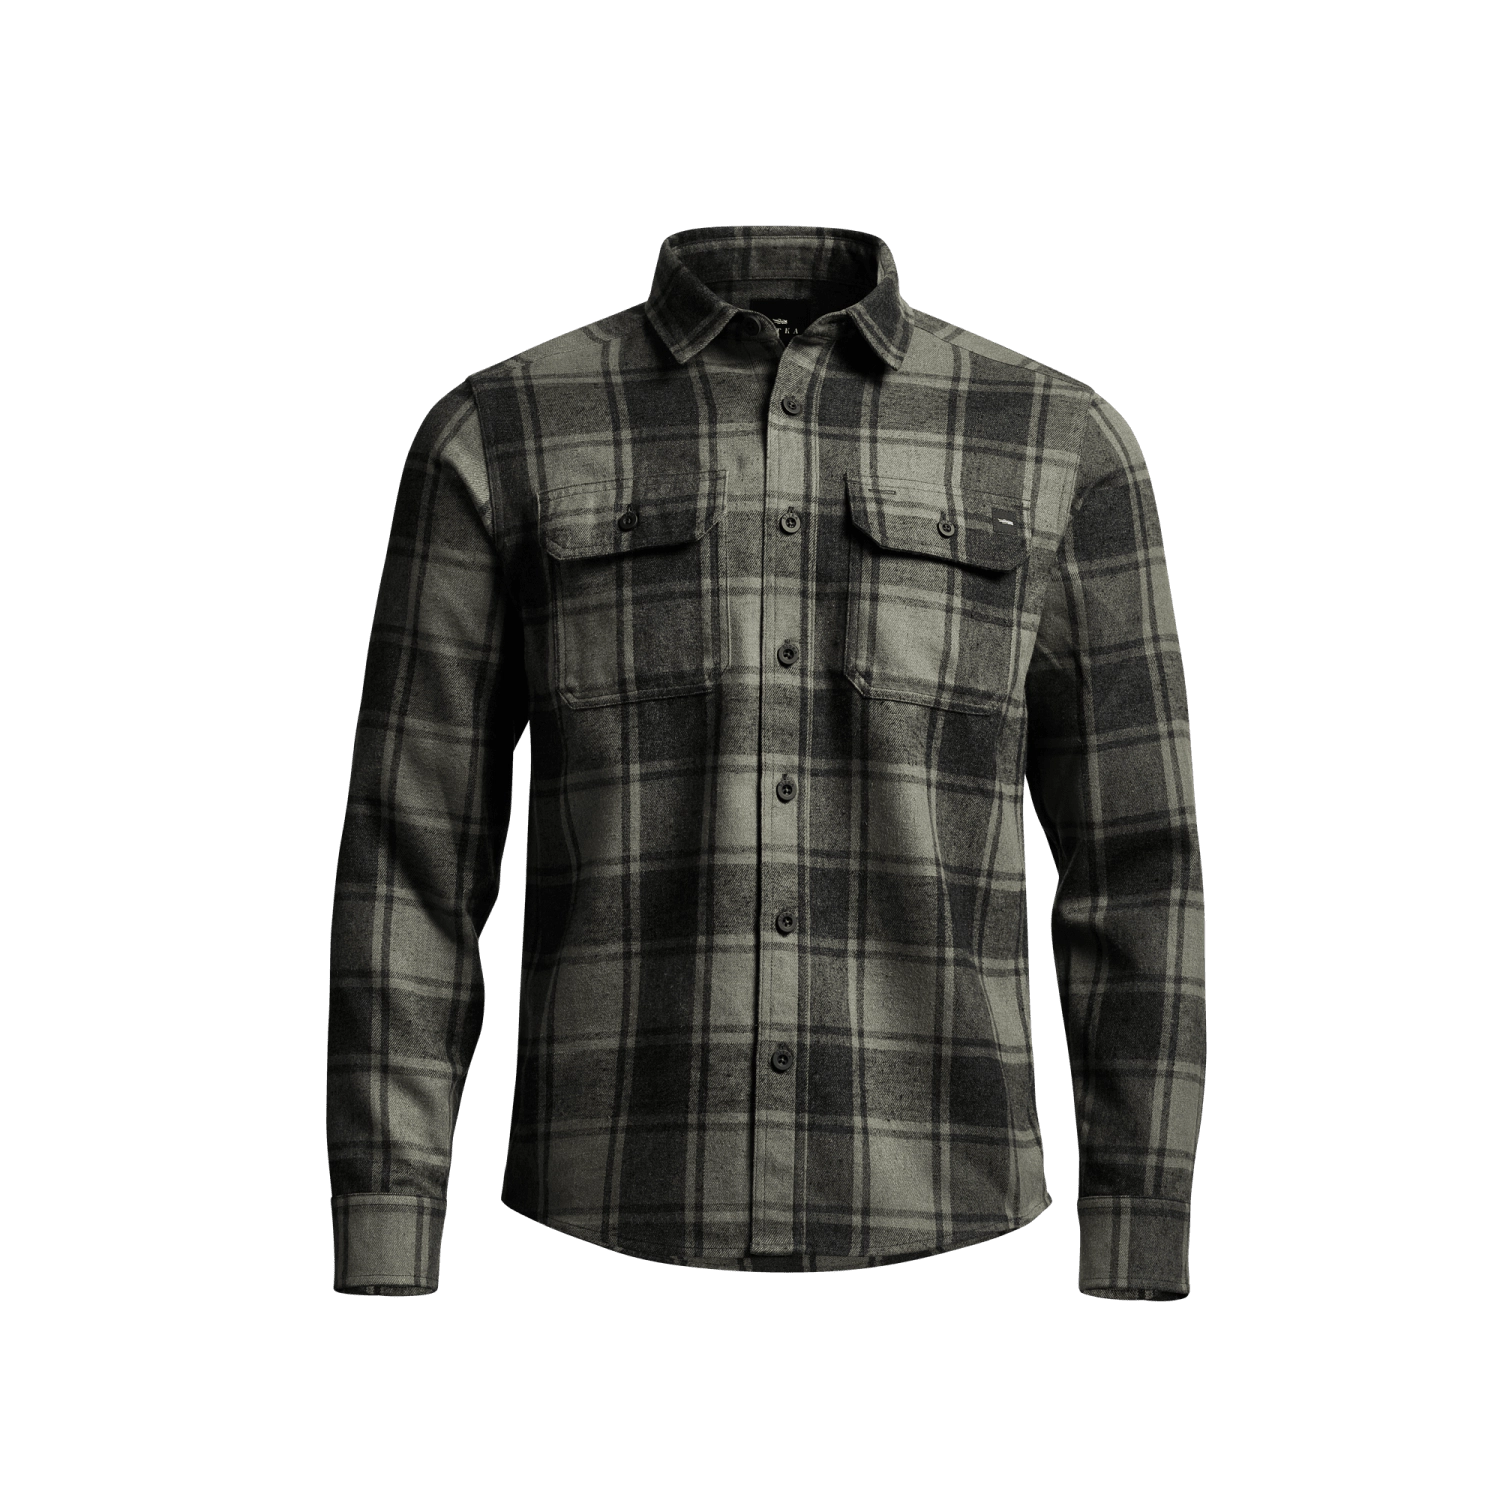 Sitka Earnest Flannel Men’s Shirt